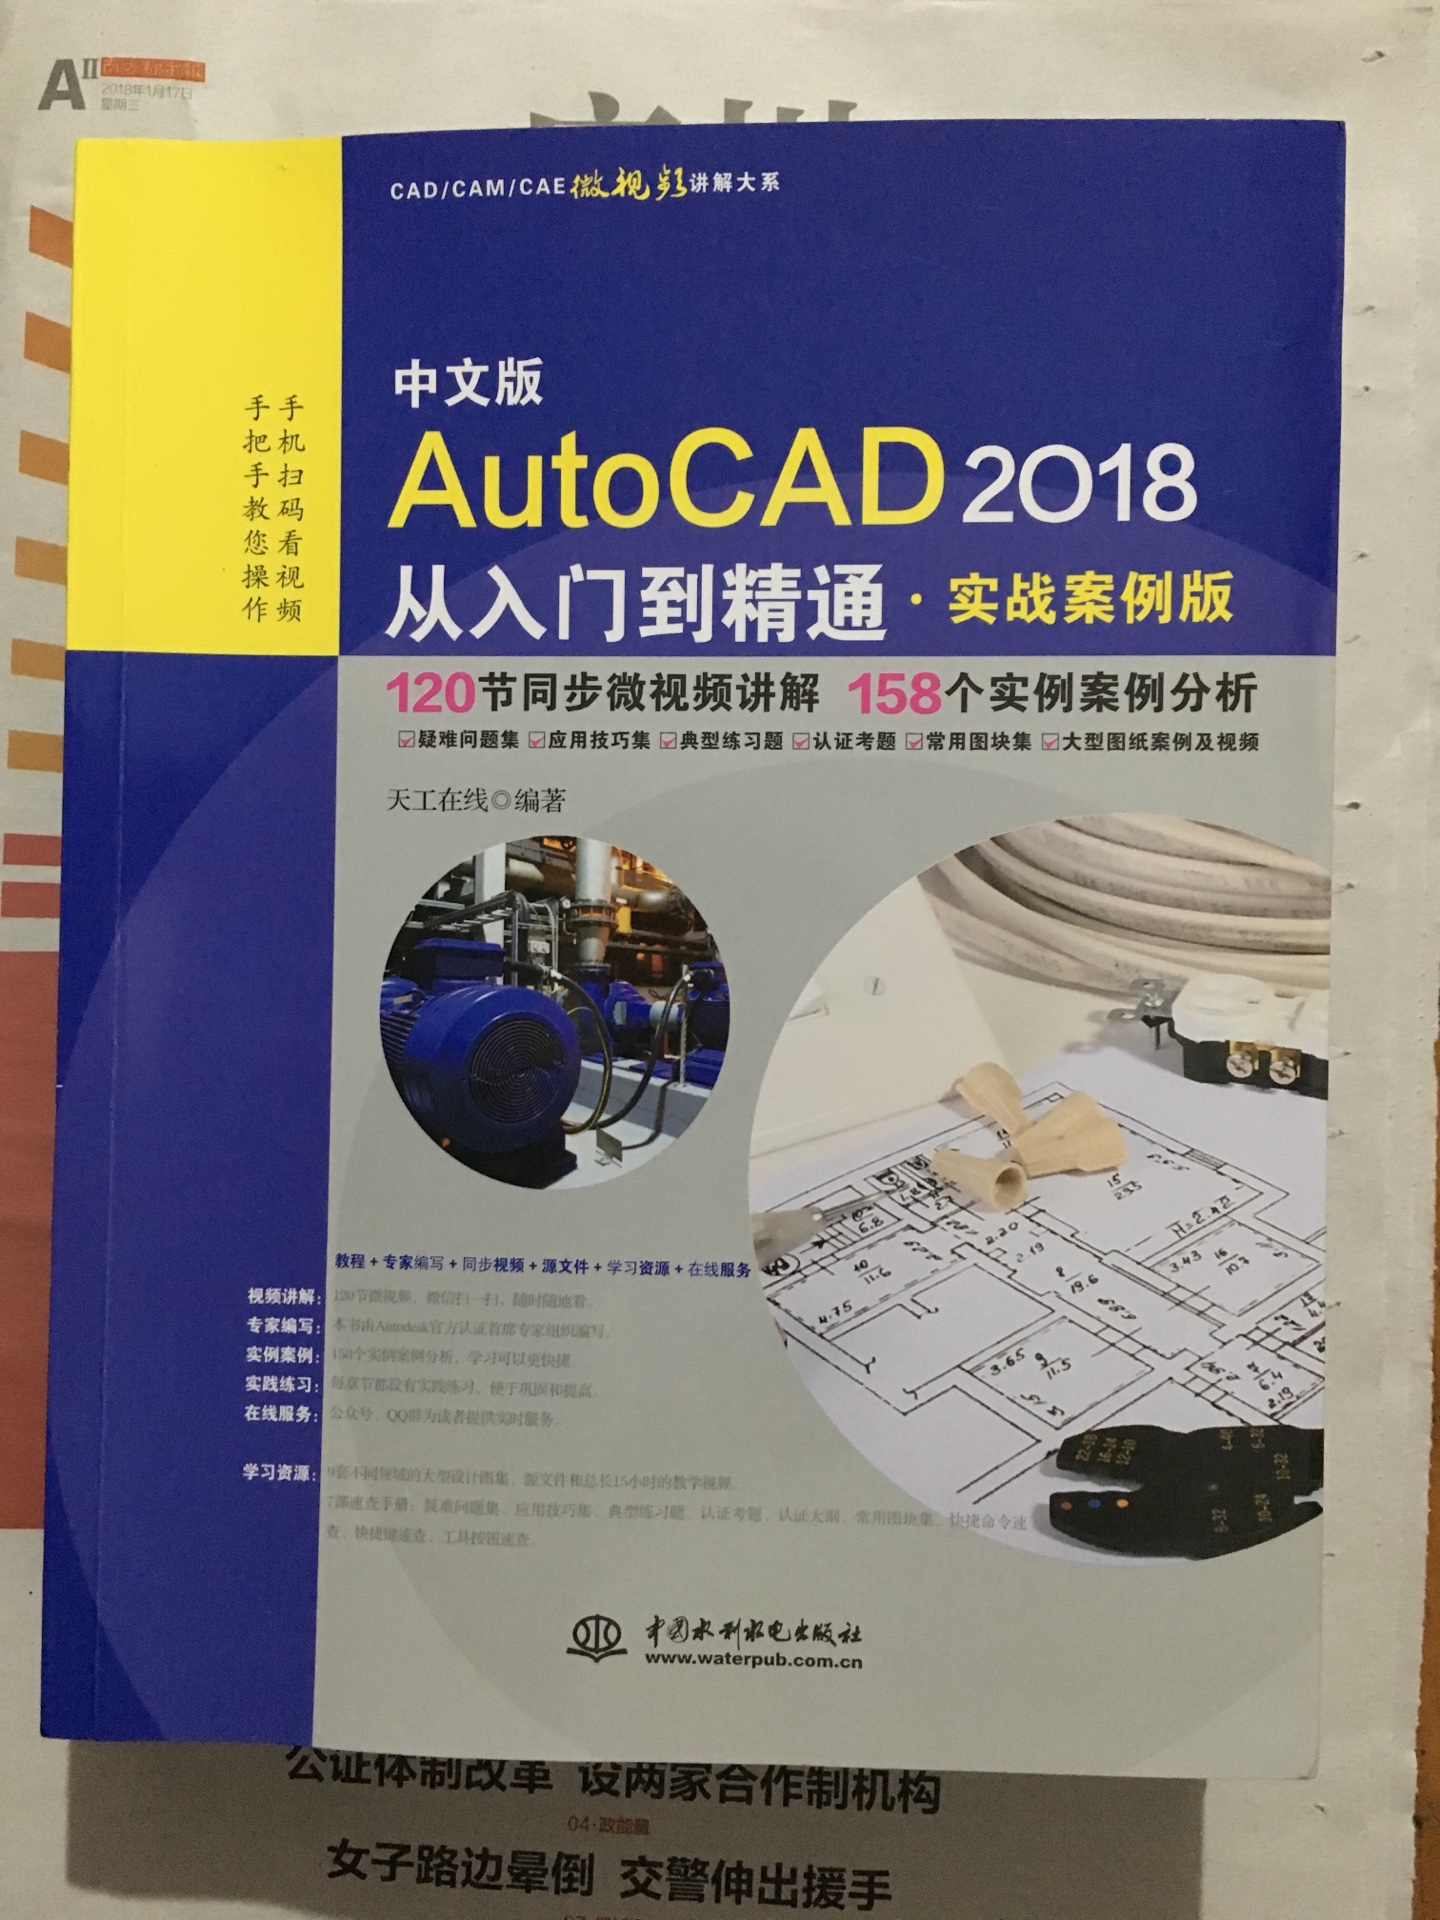 同时买了AutoCAD2018从入门到精通和AutoCAD2018机械设计从入门到精通两本书，大致内容相差不多。用来自学还是不错的，配合视频教程。